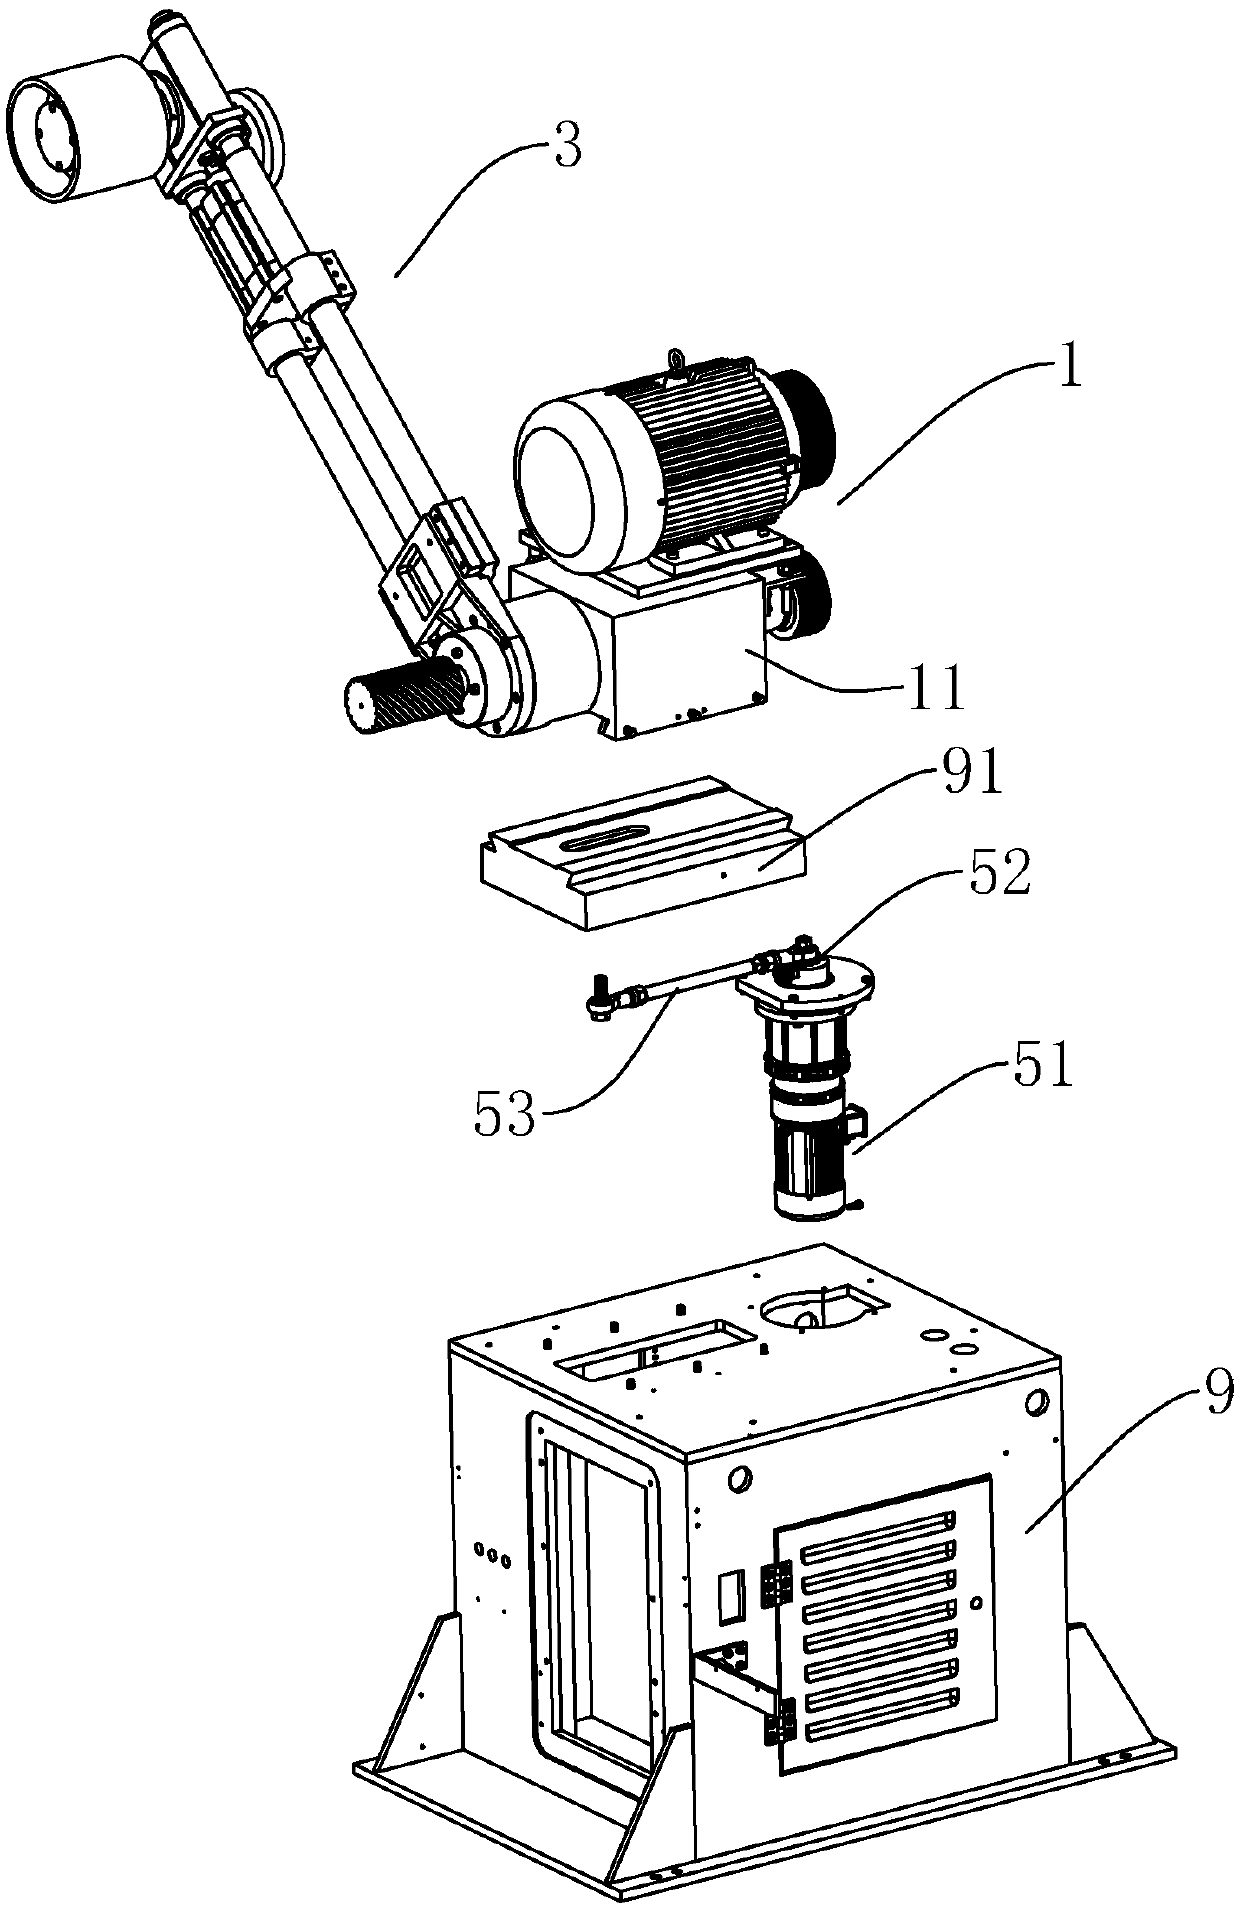 Grinding mechanism of abrasive belt grinder